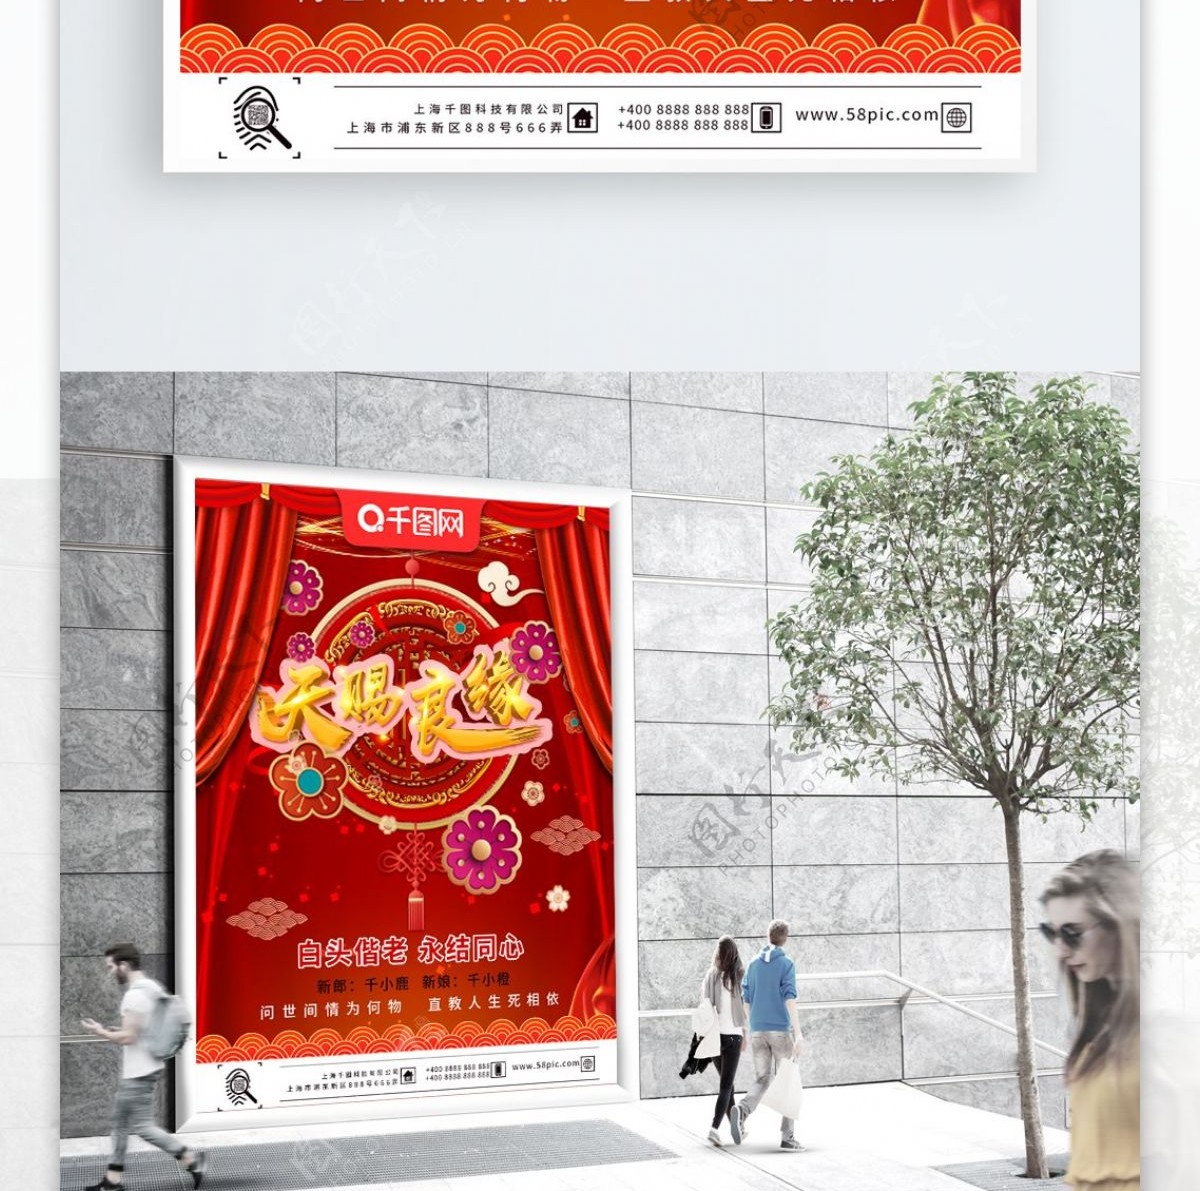 可商用中式红色喜庆天赐良缘婚礼宣传海报